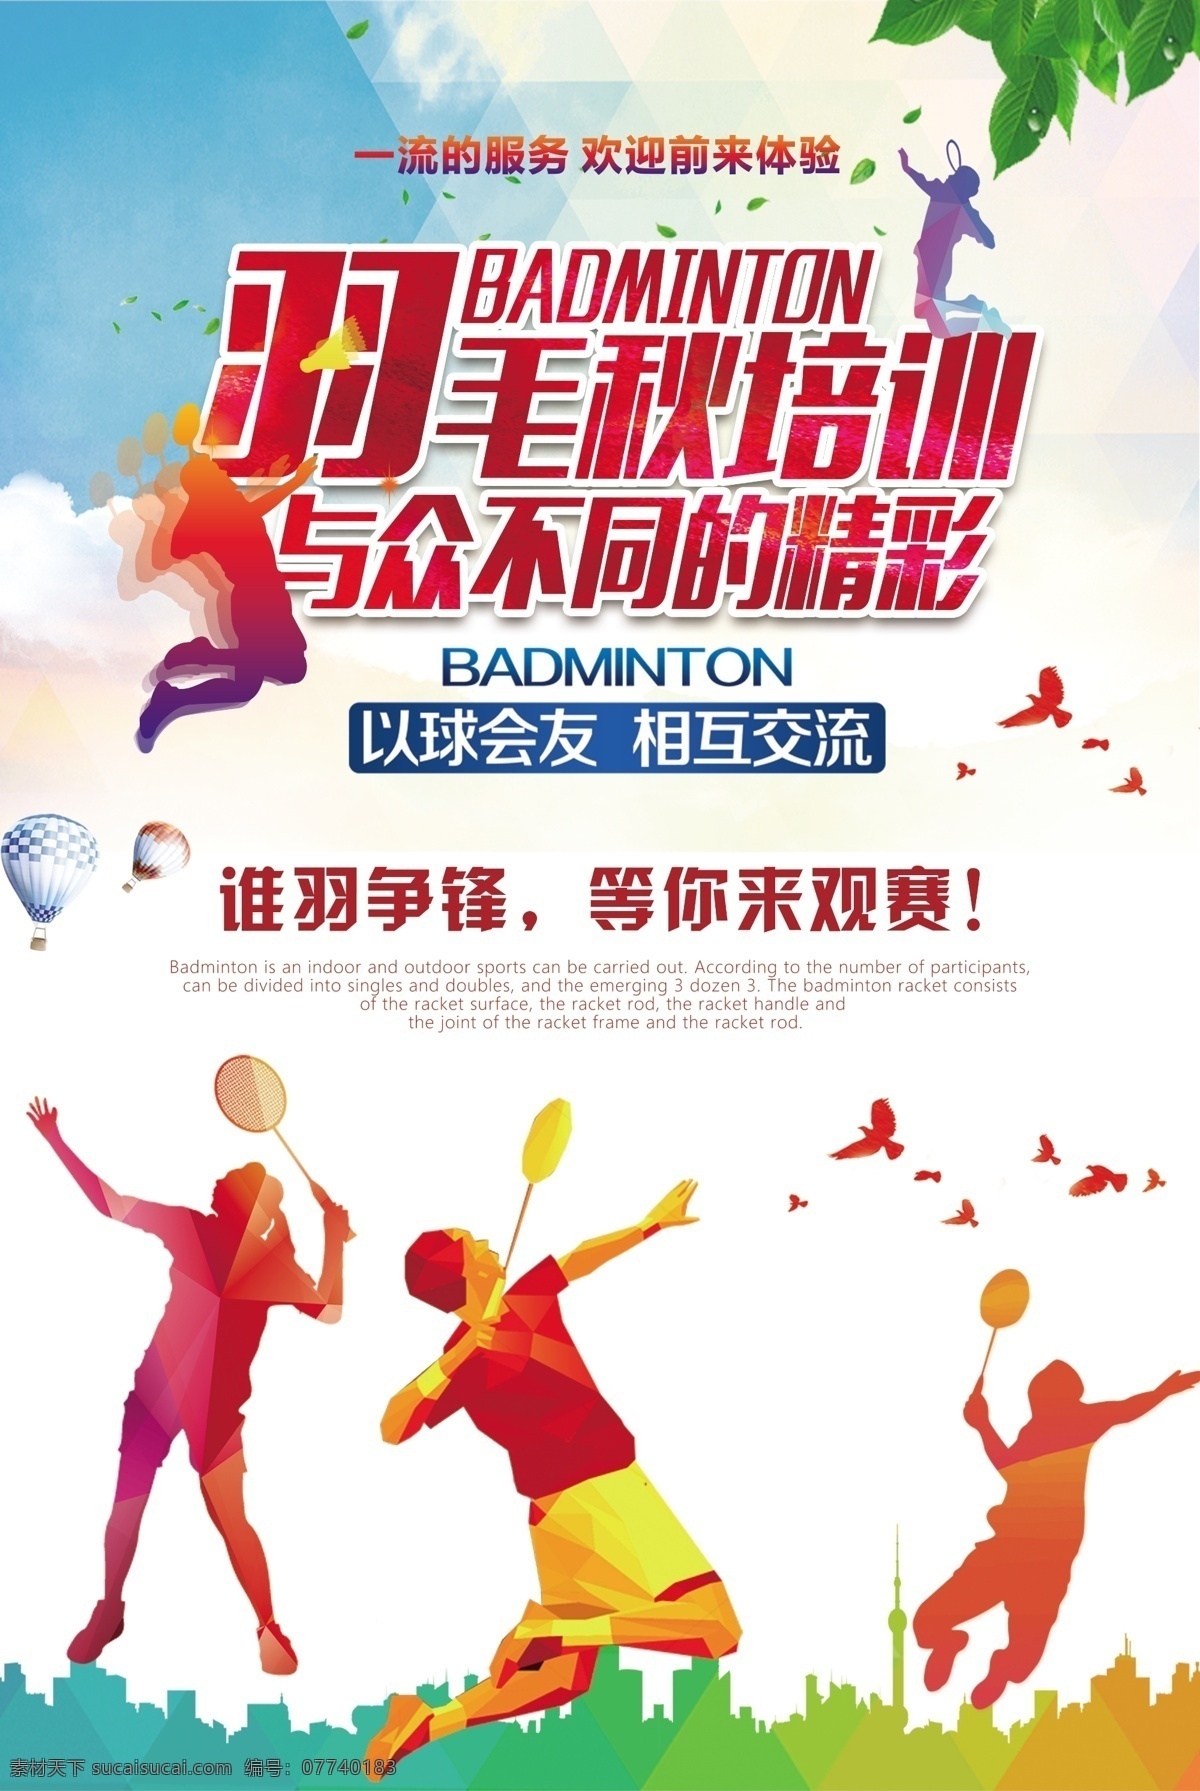 羽毛球运动 活动 宣传海报 羽毛球 运动 宣传 海报